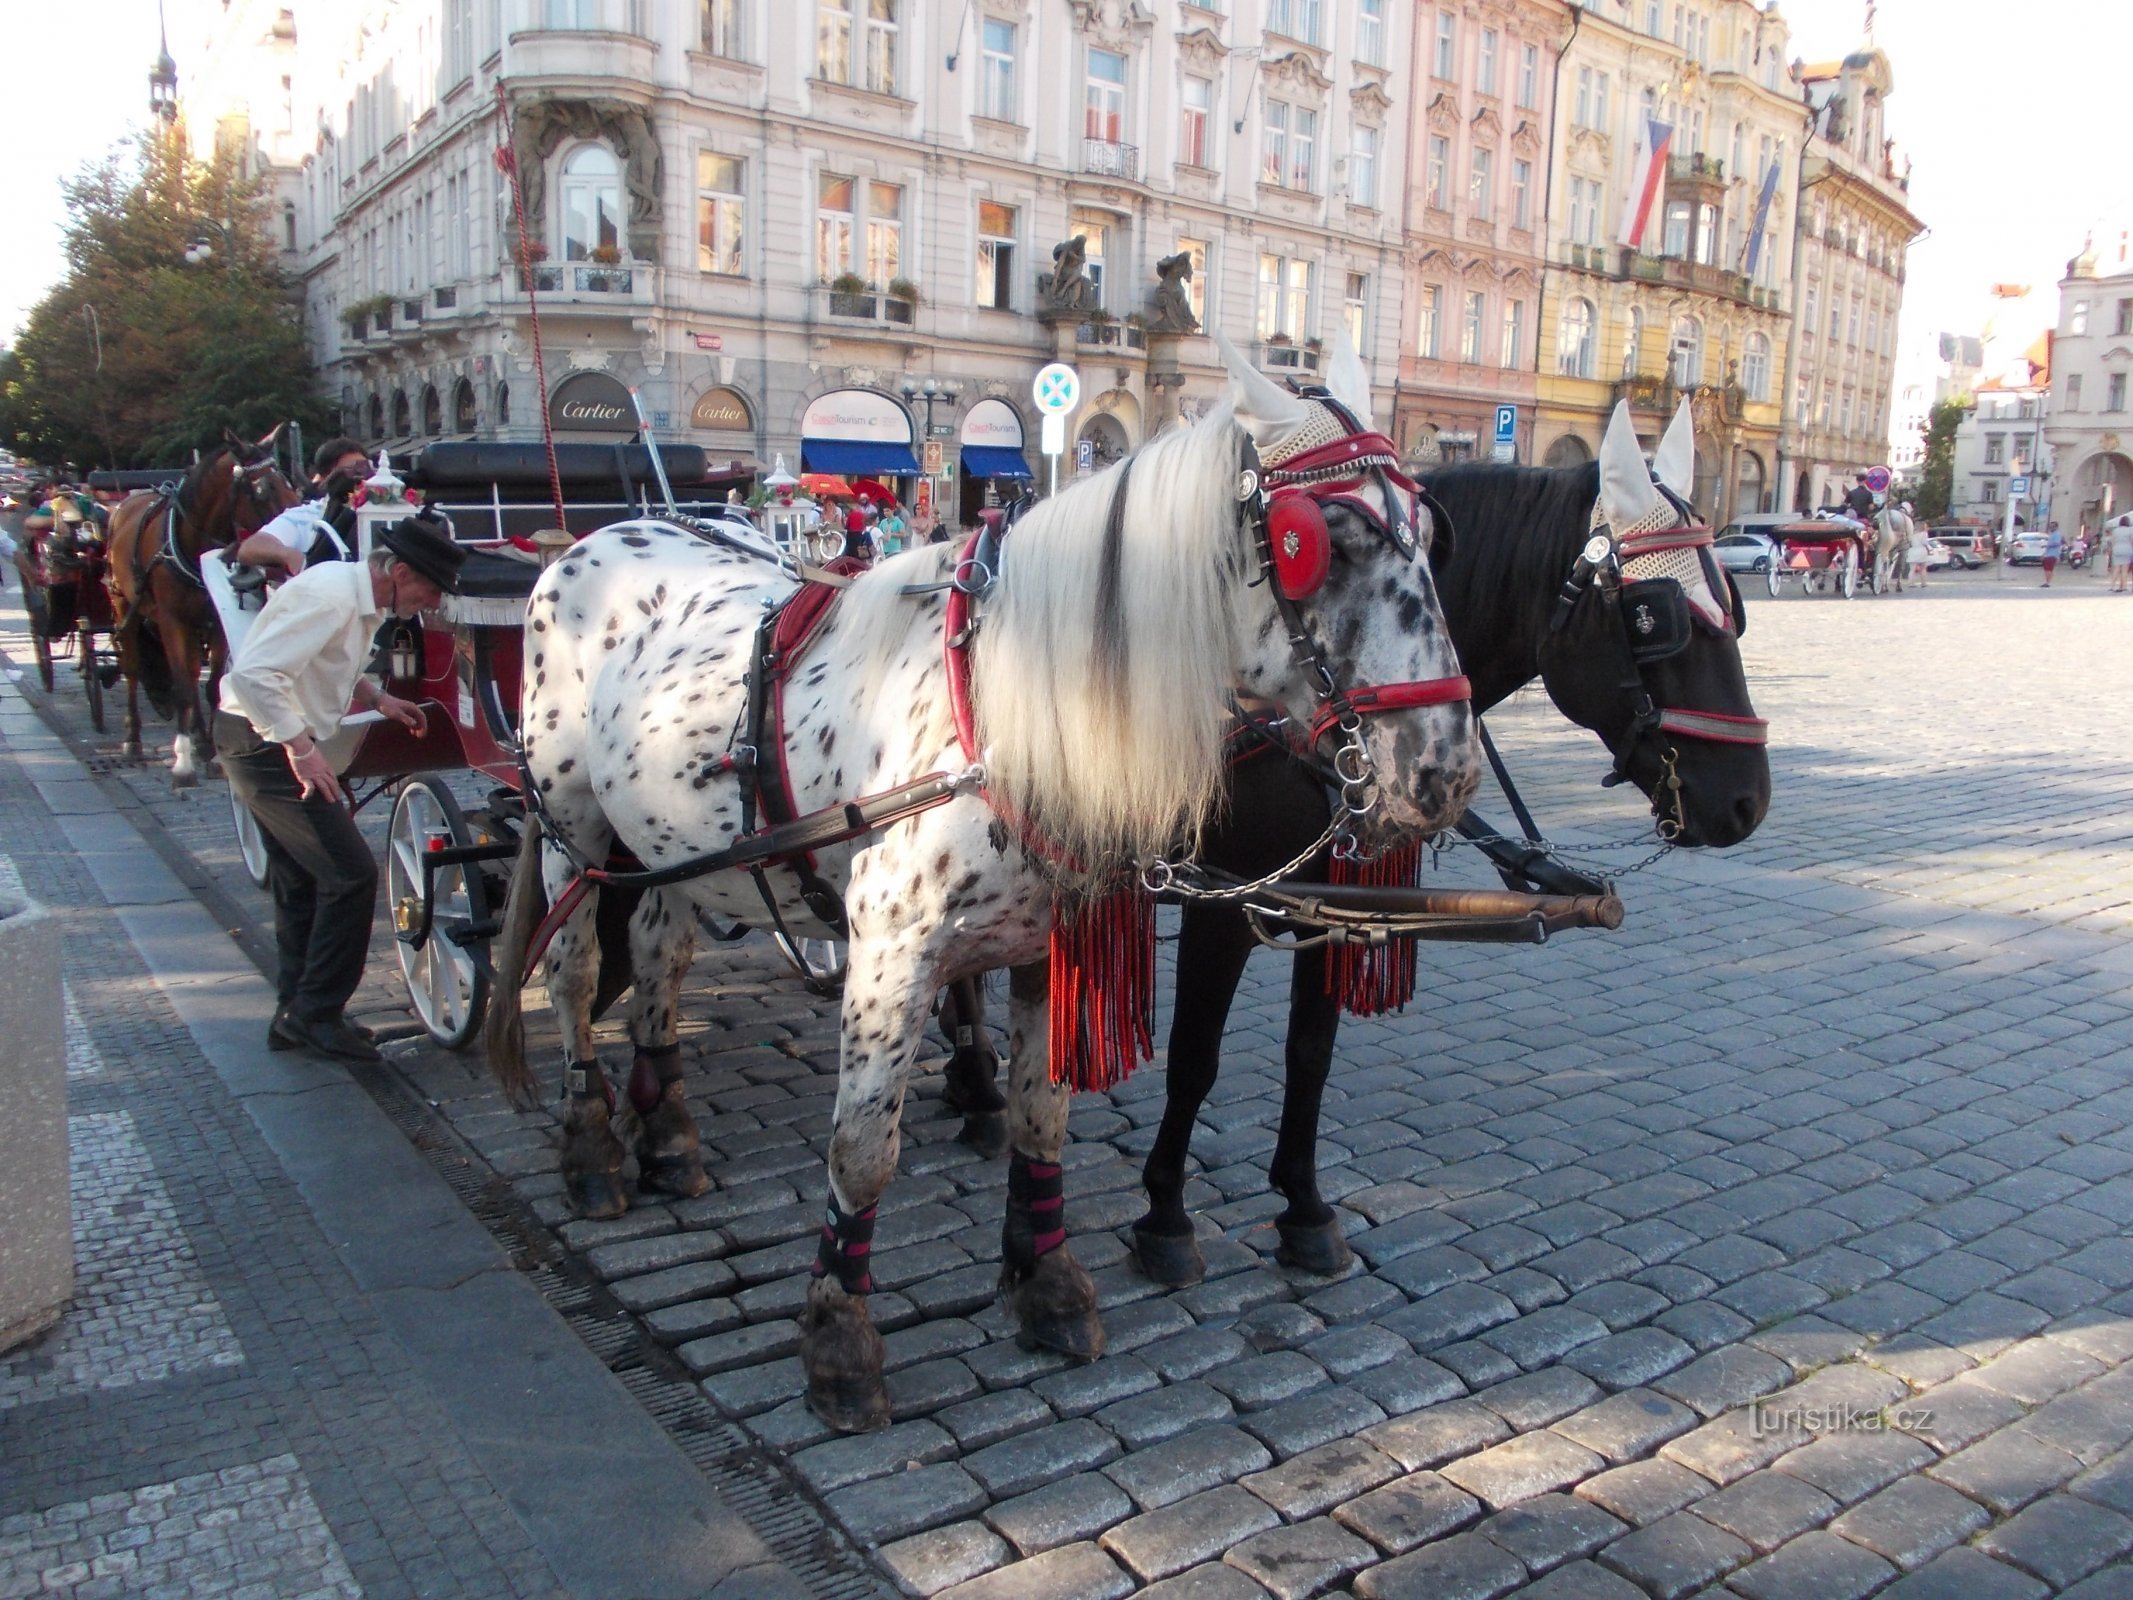 intră și lasă-te condus prin Praga antică